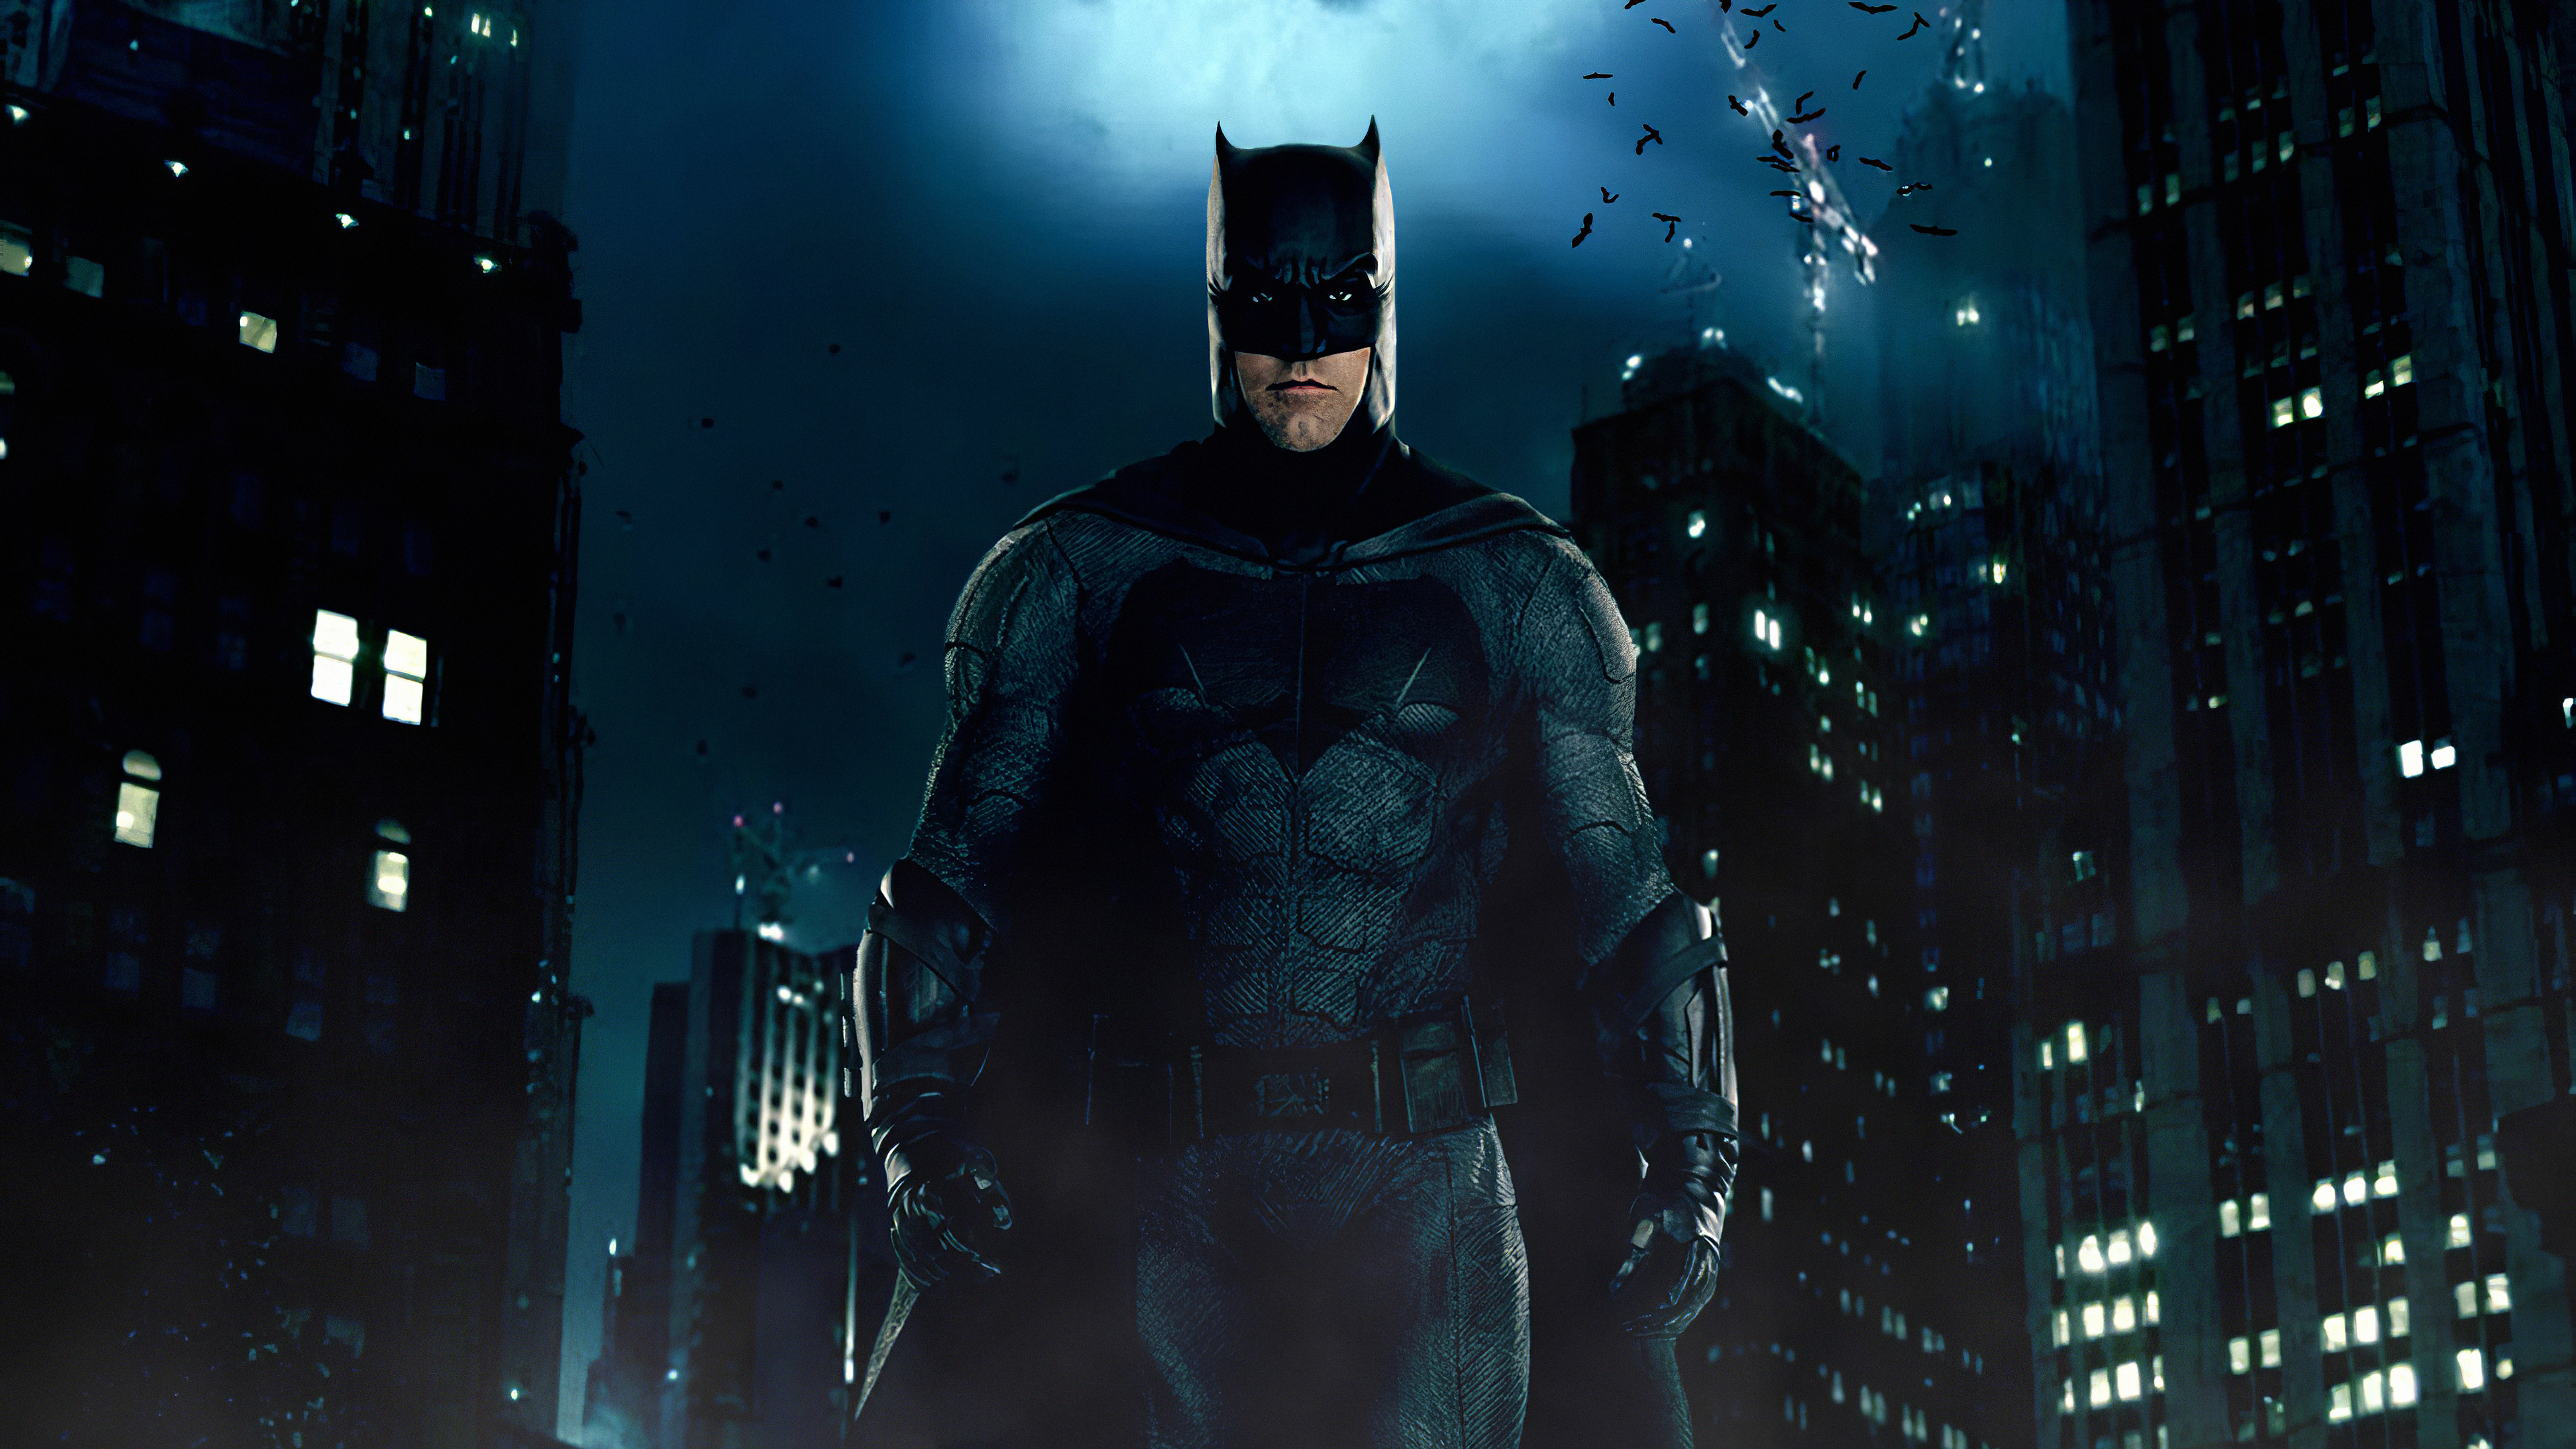 batman fonds d'écran hd,homme chauve souris,super héros,personnage fictif,ligue de justice,film